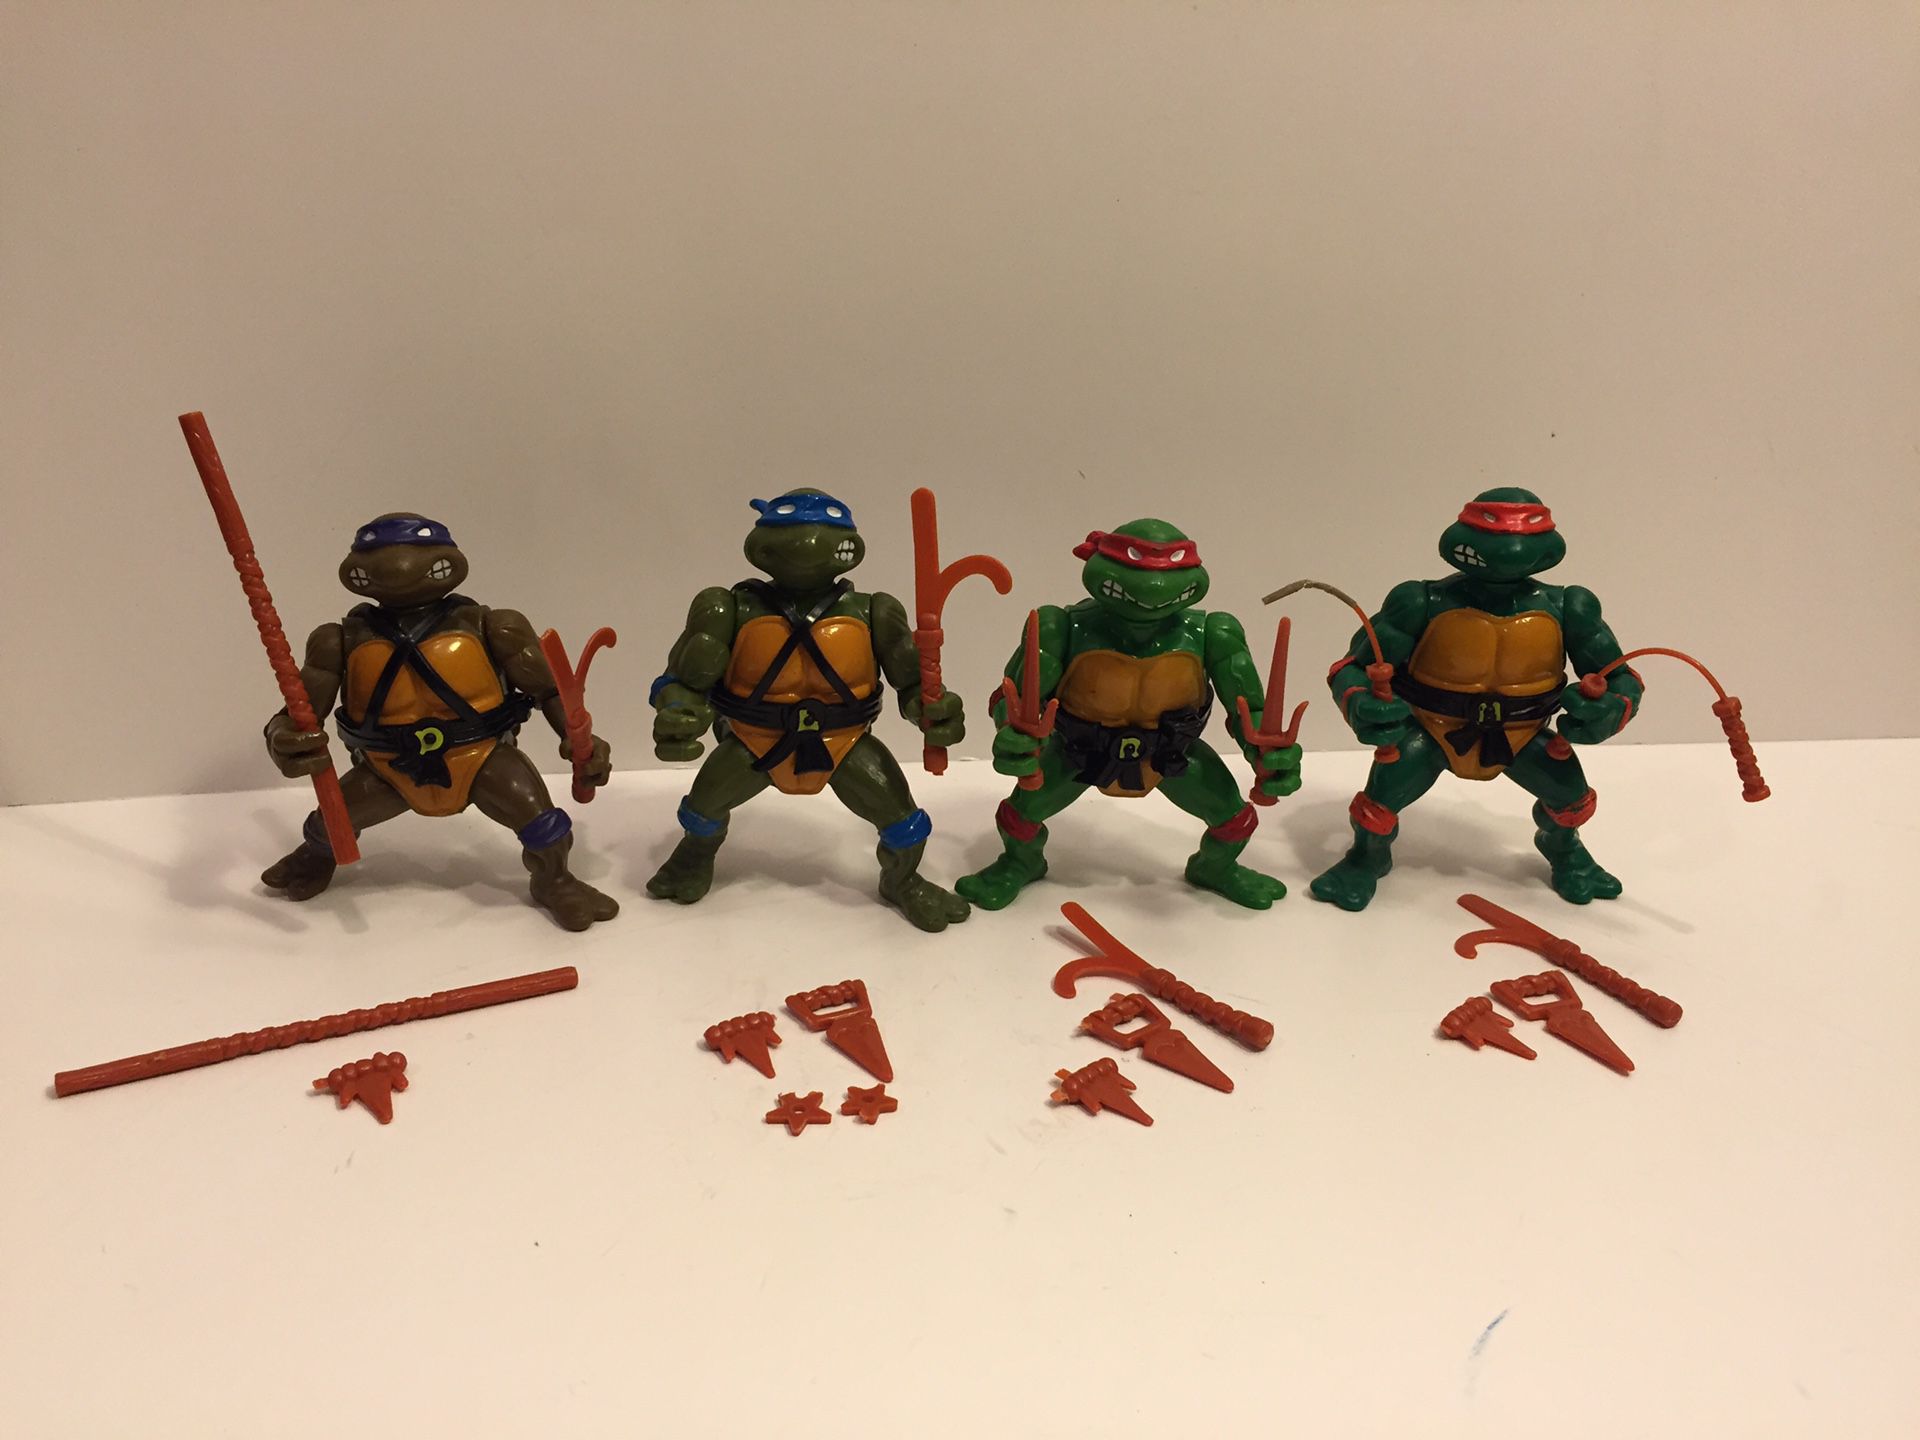 1988 TMNT Turtles Lot - Vintage Action Figure Toy Playmates - Teenage Mutant Ninja